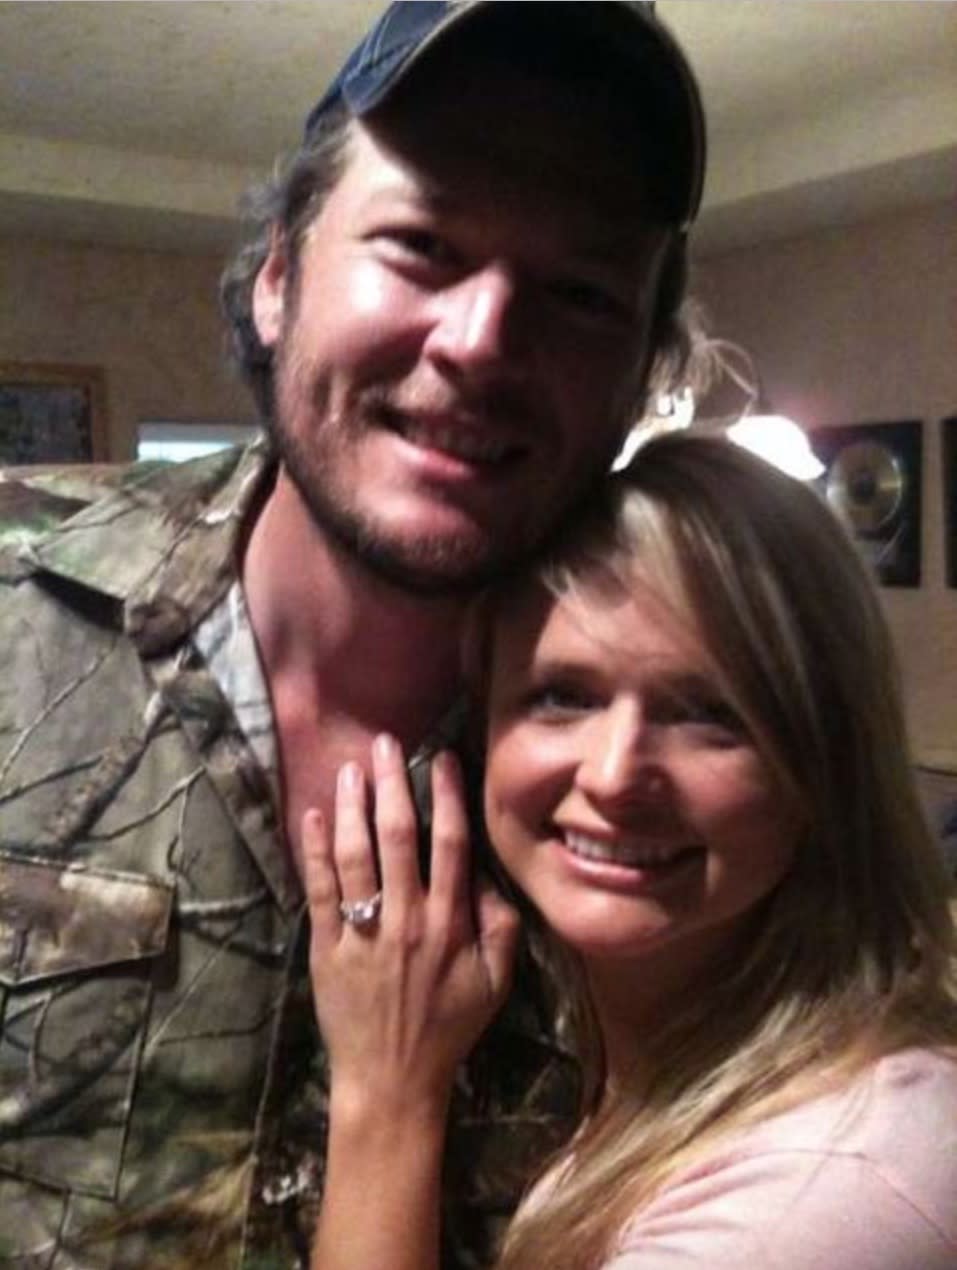 Lambert shows off the engagement ring Shelton gave her. (Photo: Miranda Lambert)